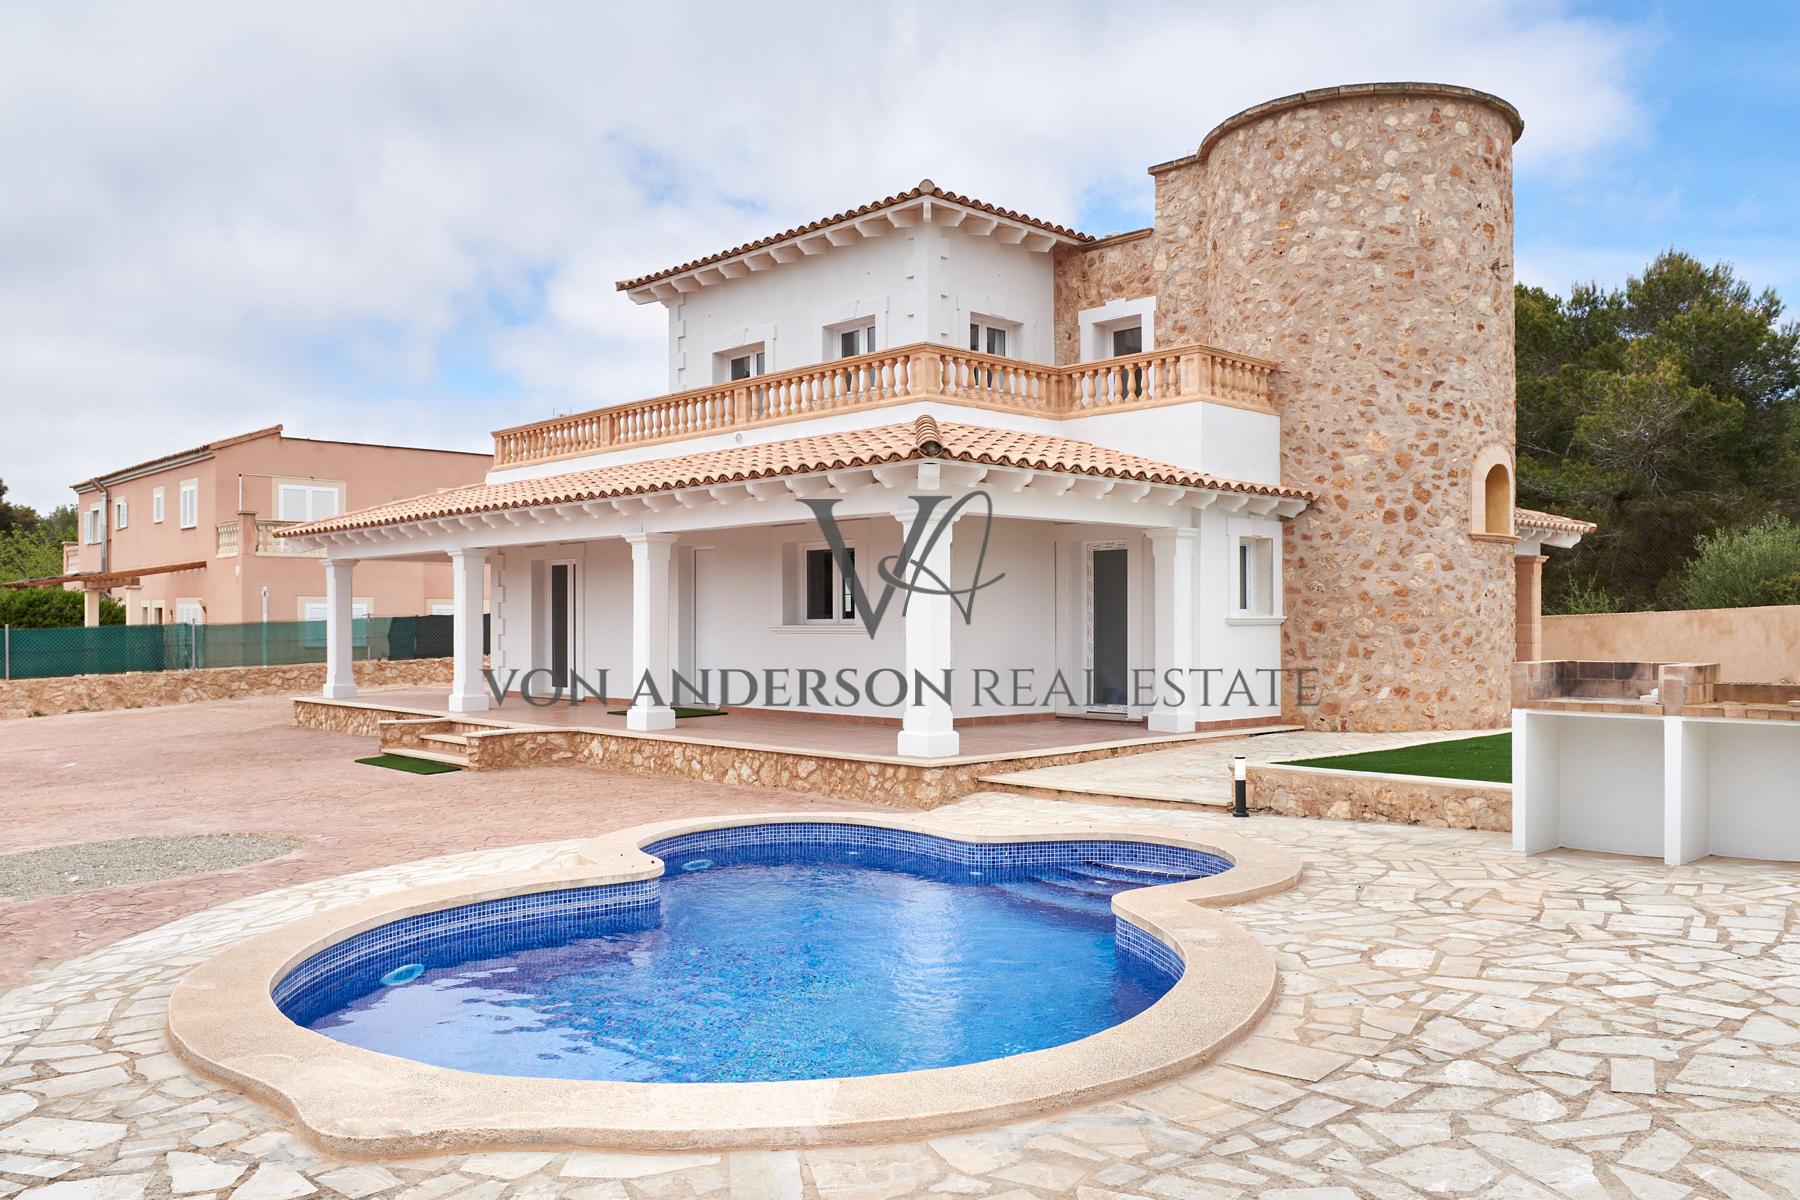 Contemporary 3 Bedroom Villa in Close Proximity to Cala Pi Beach, ref. VA1026, for sale in Mallorca by Von Anderson Real Estate